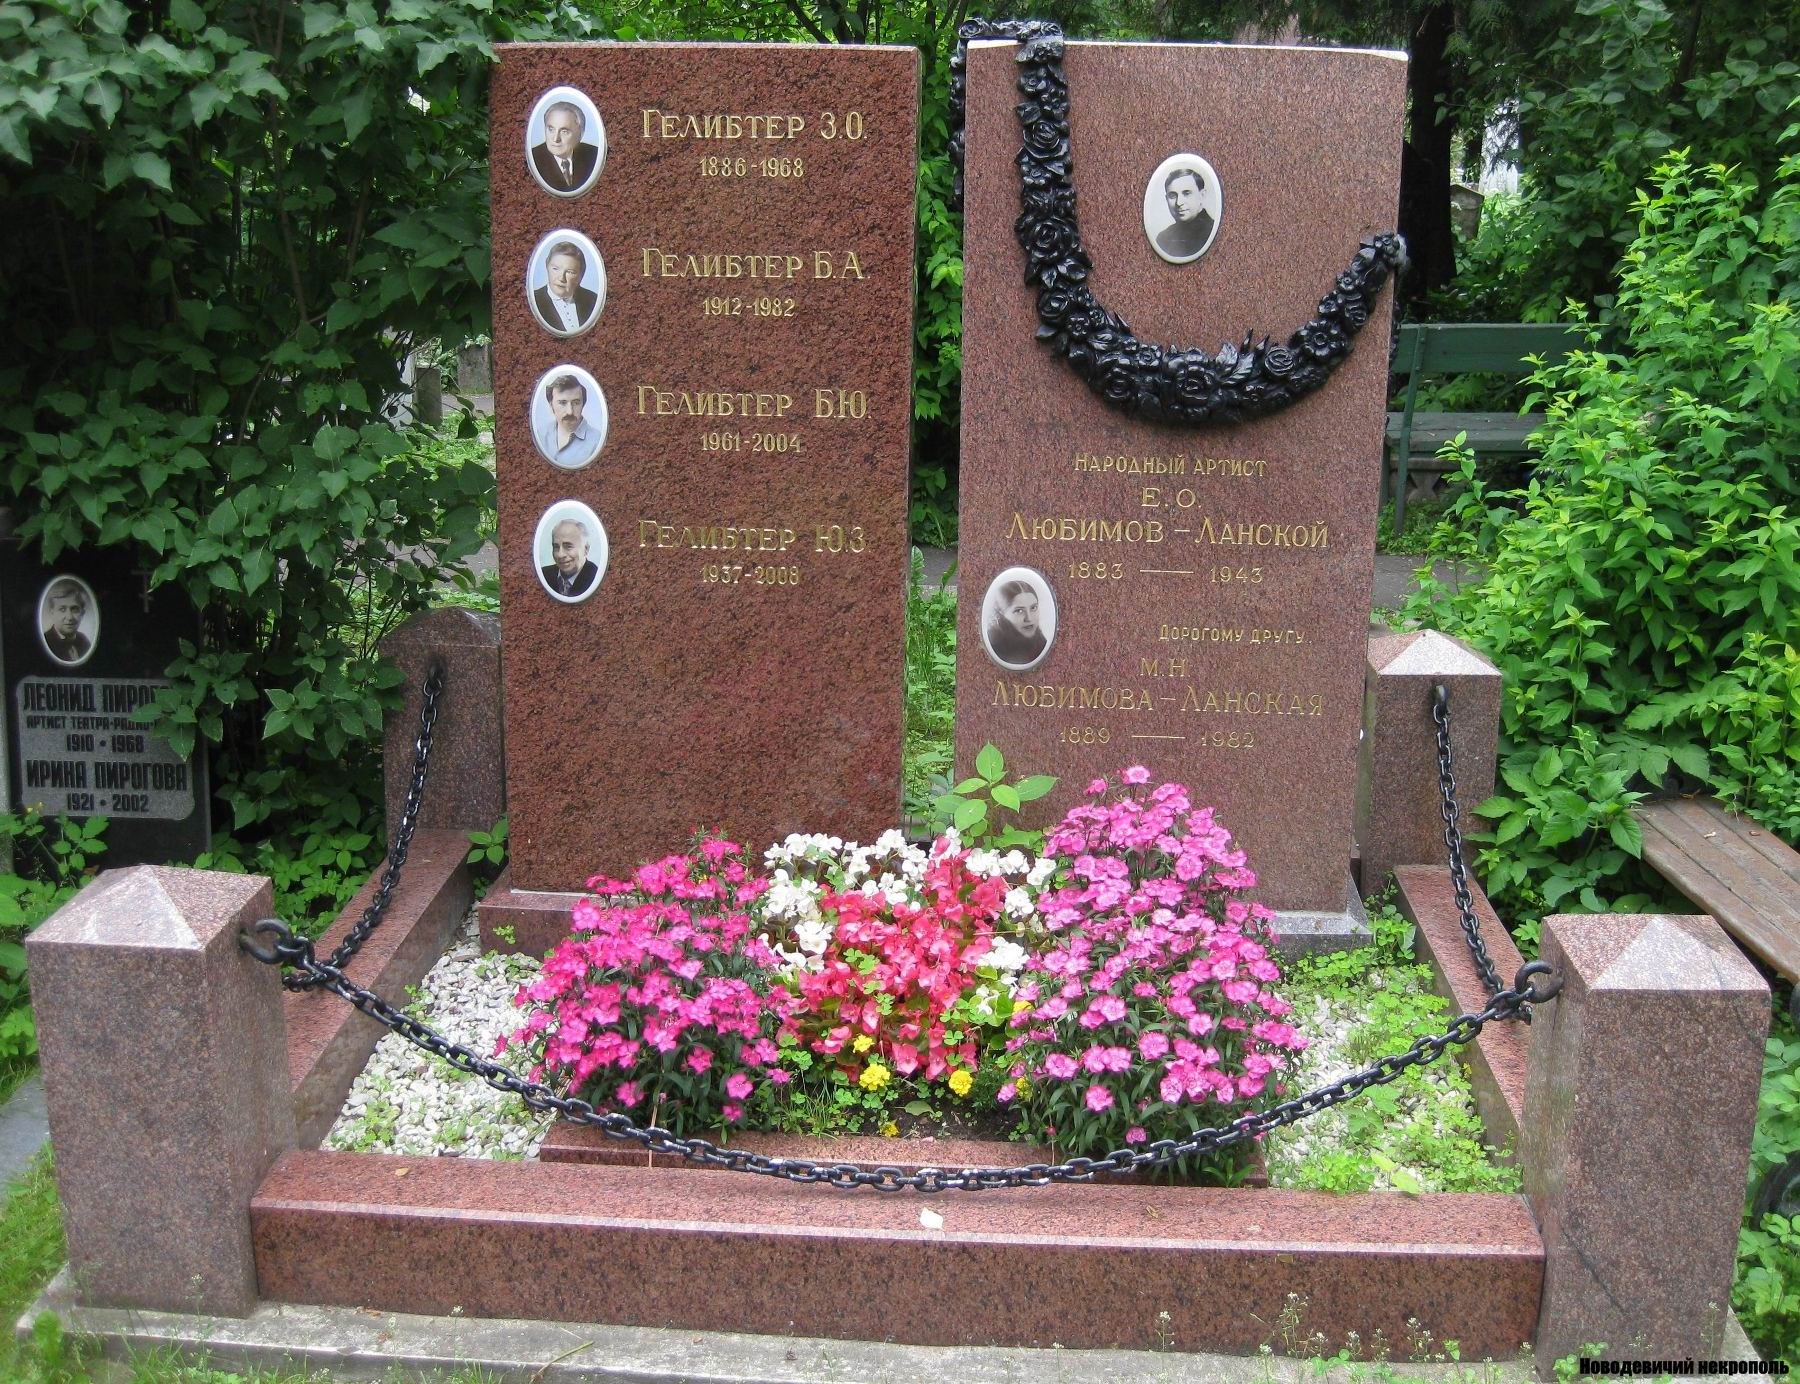 Памятник на могиле Любимова-Ланского Е.О. (1883-1943), на Новодевичьем кладбище (2-6-23).